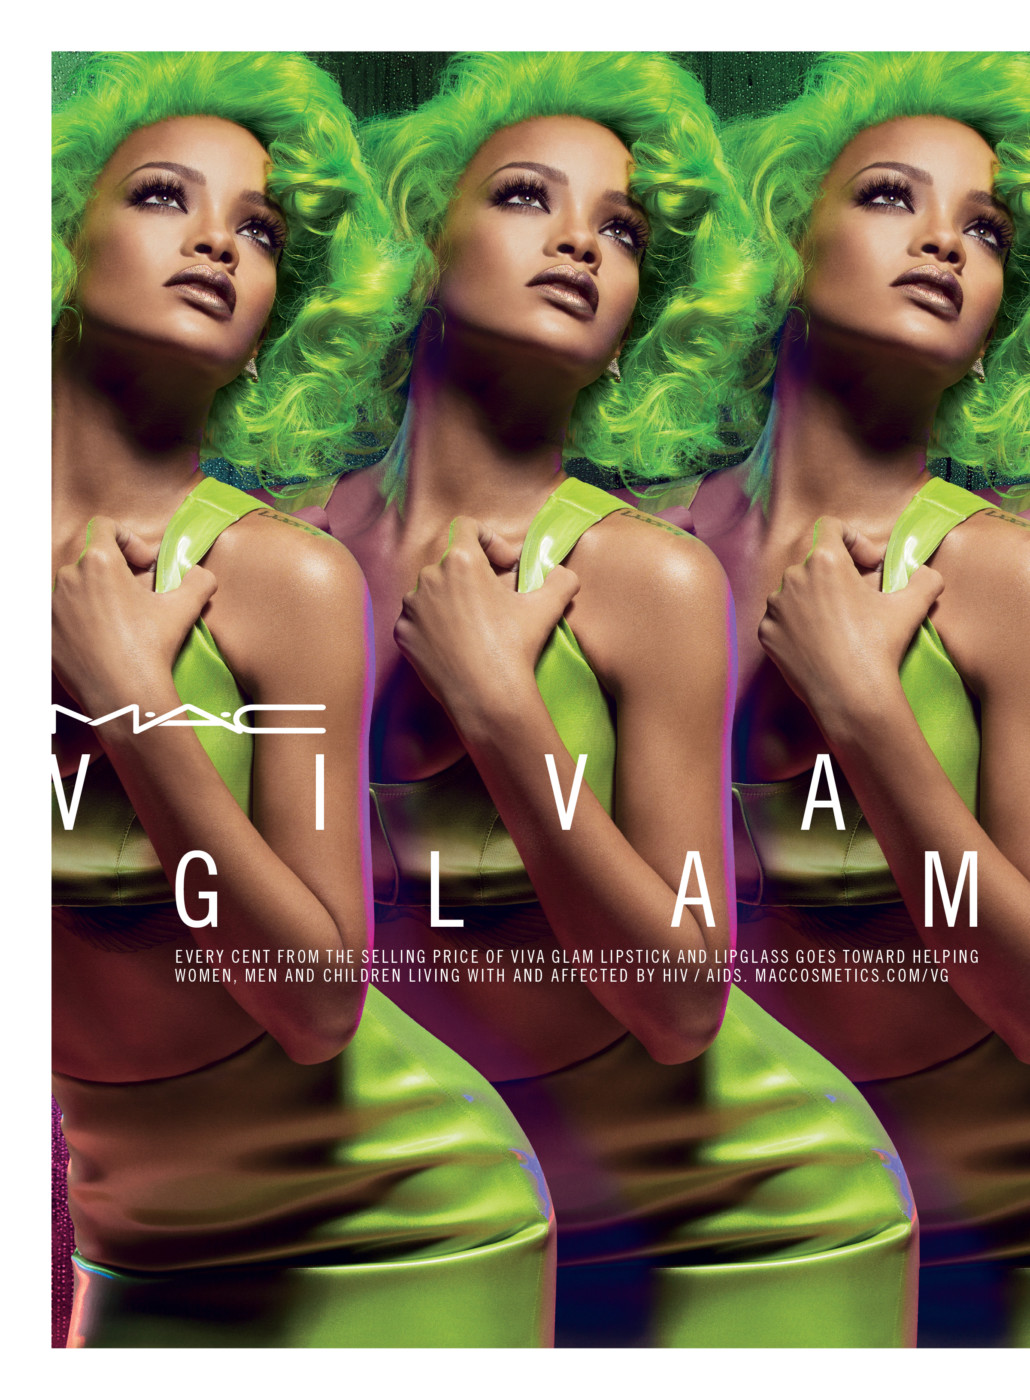 mac viva glam rihanna 2, mac viva glam, rihanna viva glam, mac rihanna, mac rihanna 2014, rihanna lipstick, rihanna lipglass, mac new viva glam, rihanna new viva glam campaign